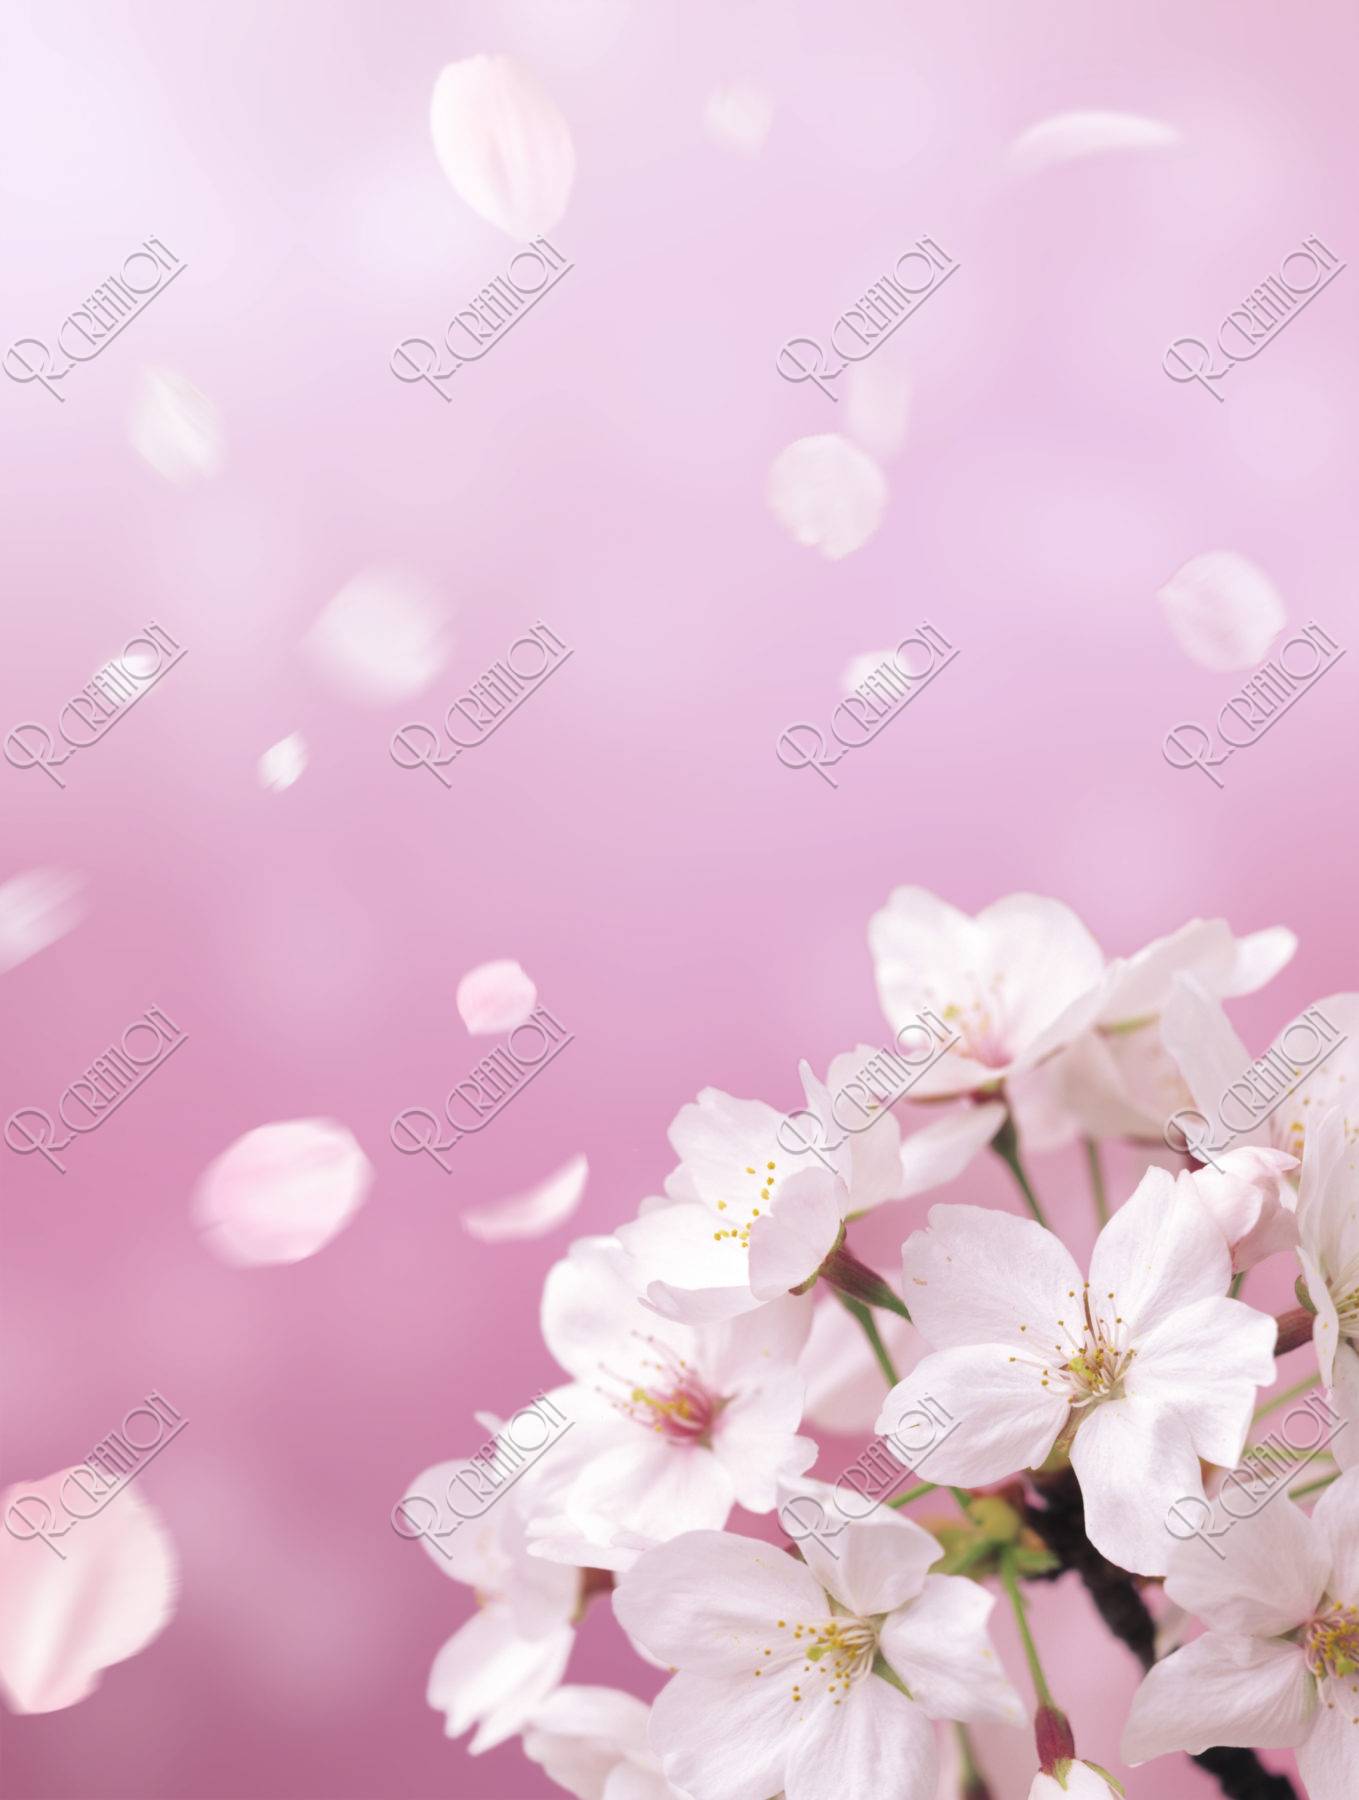 桜 桜吹雪 花吹雪 散る アップ 春 合成 ピンク イラスト Cg アールクリエーション